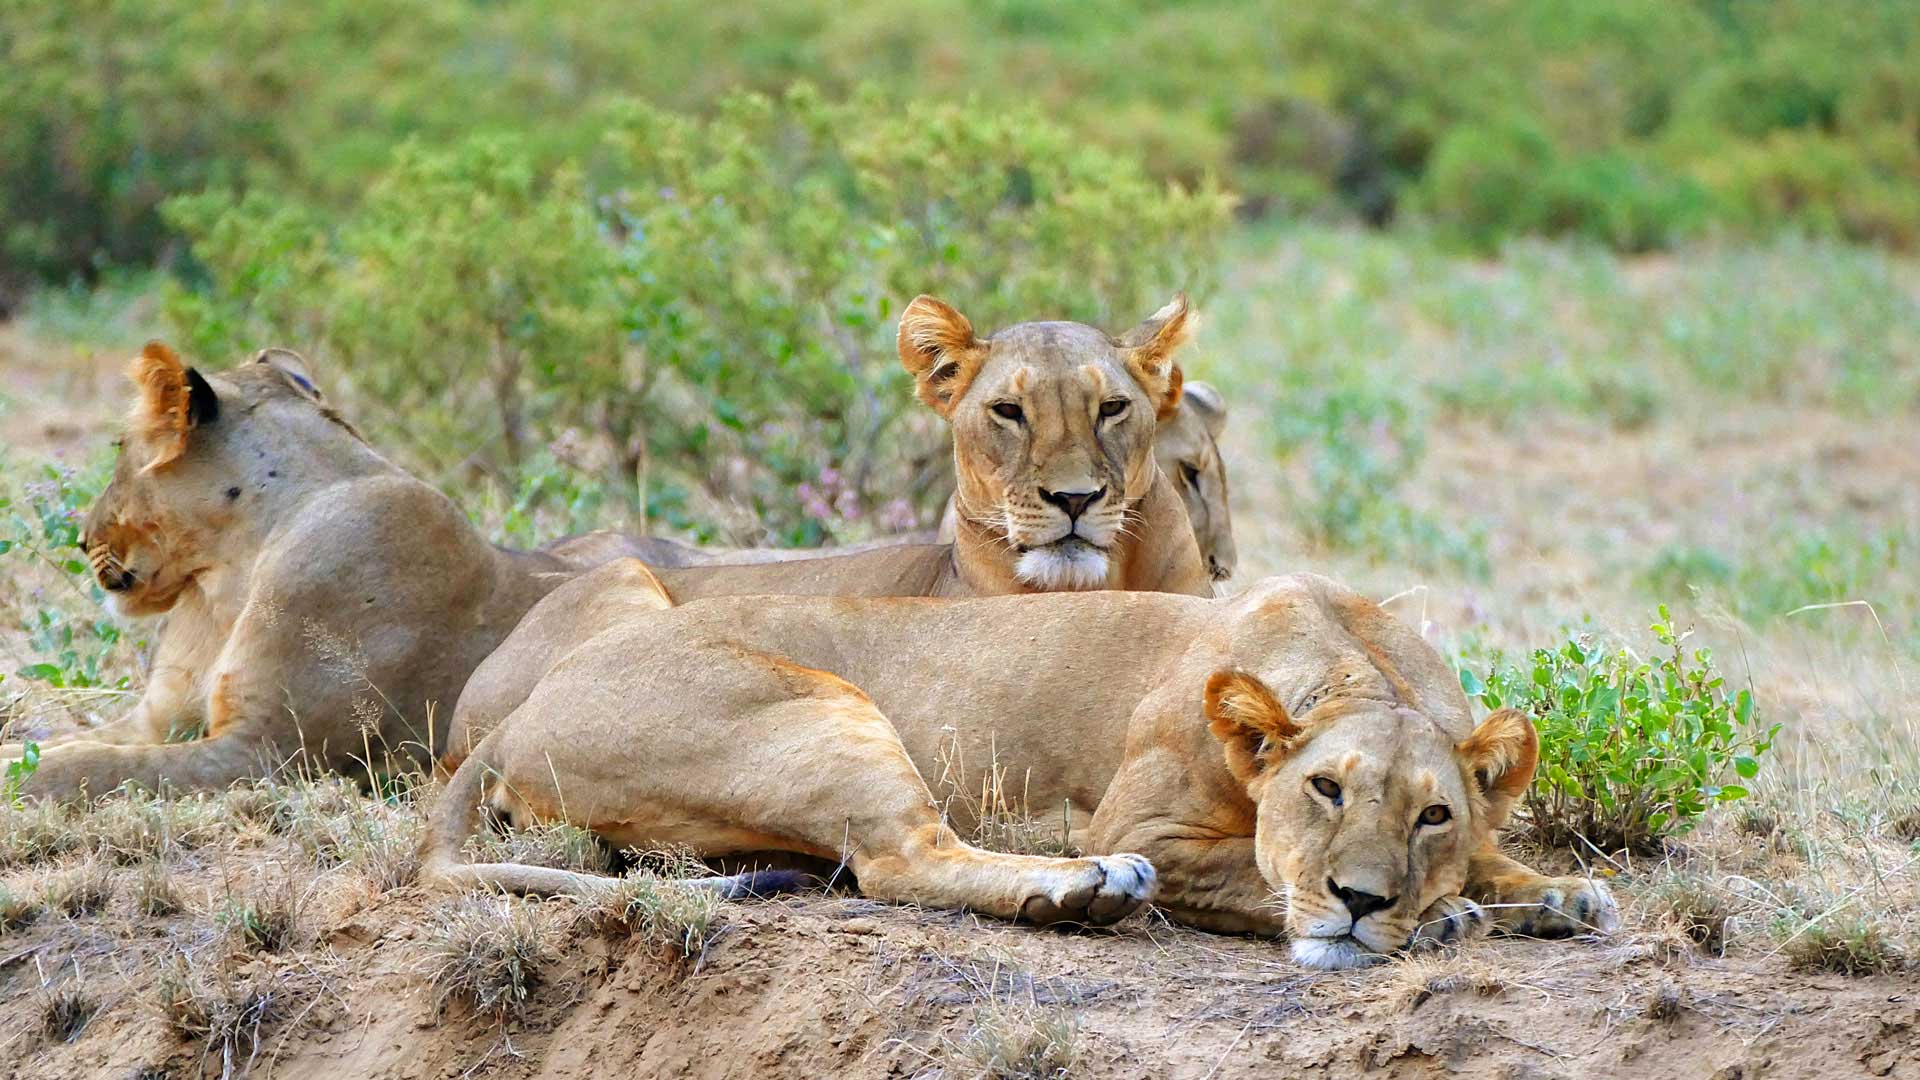 Löwen auf privat geführter Safari durch Kenias Tierwelt